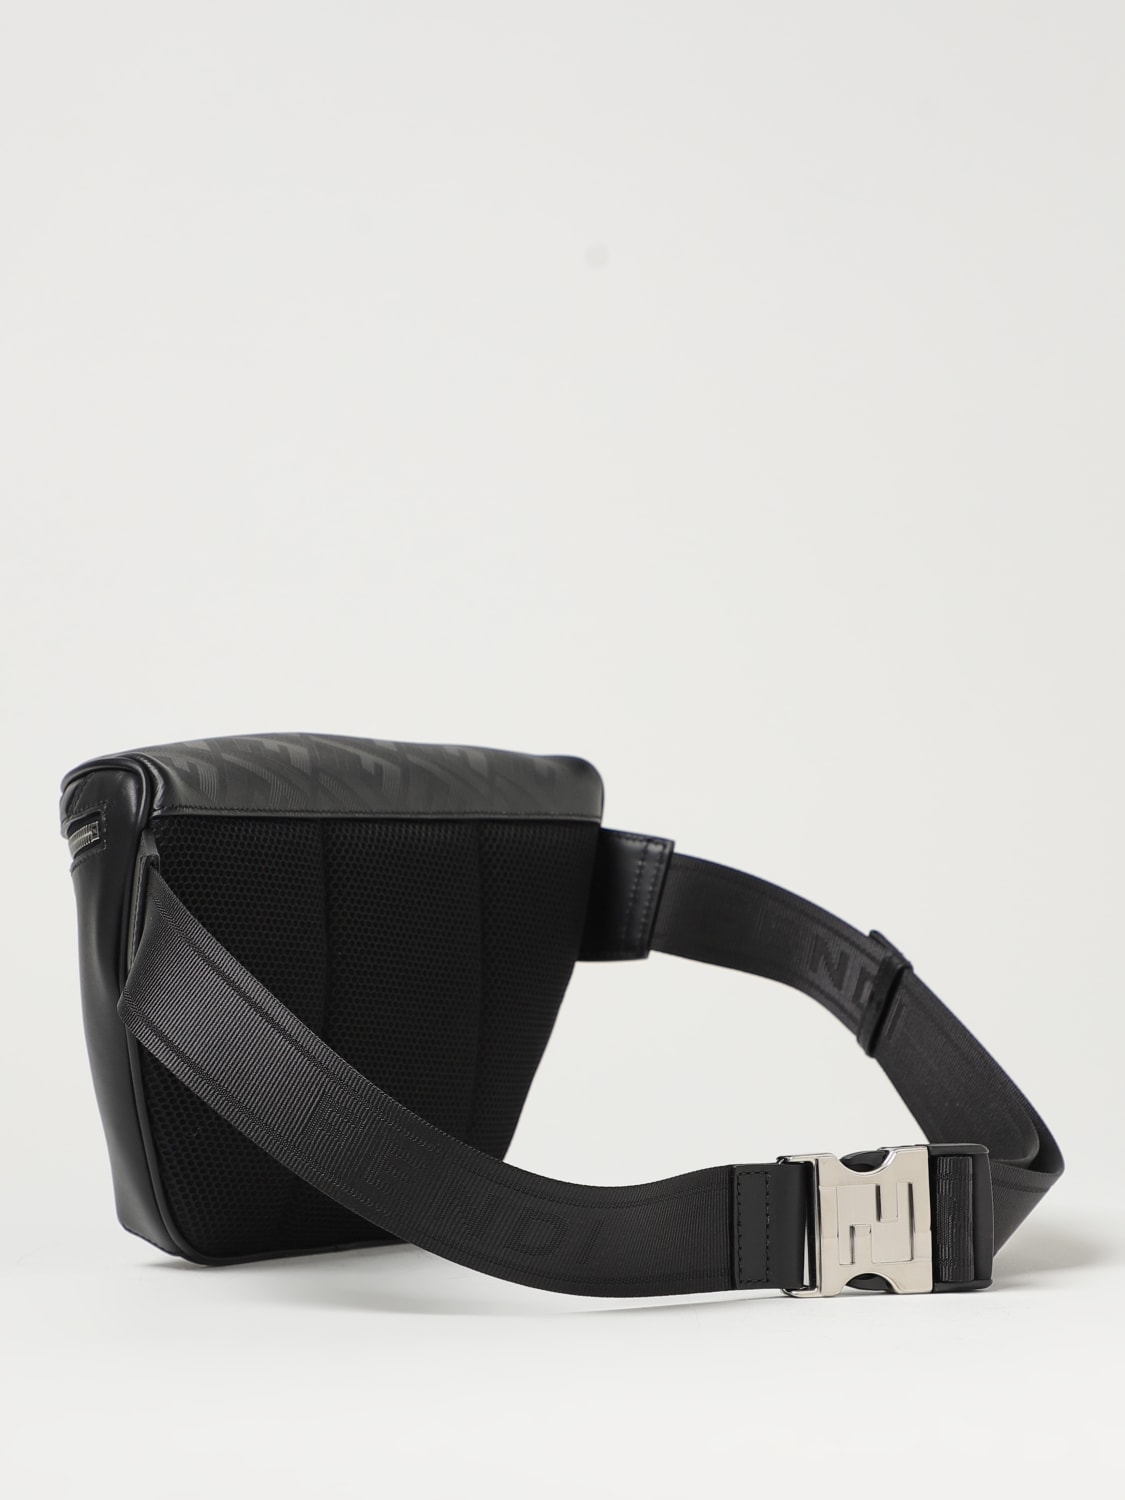 FENDI: Diagonal belt bag in leather embossed FF pattern - Black | Fendi belt bag 7VA562APDO online on GIGLIO.COM